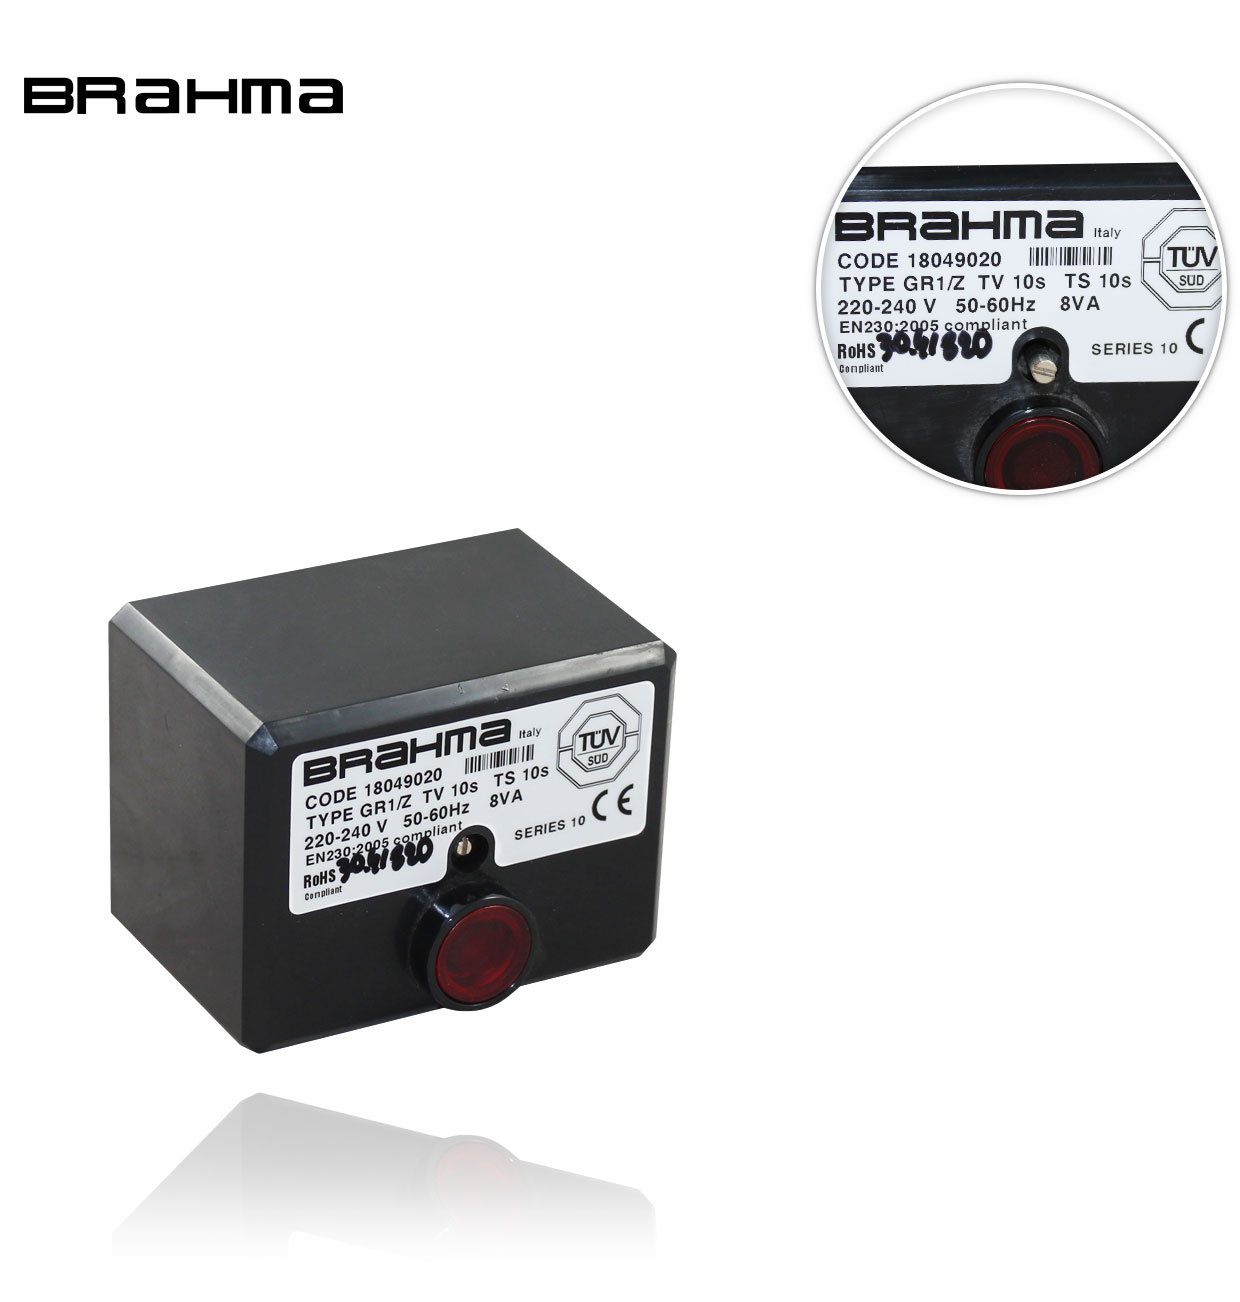 GR1/Z S10 TW10 TS10 18049020 BRAHMA CONTROL BOX